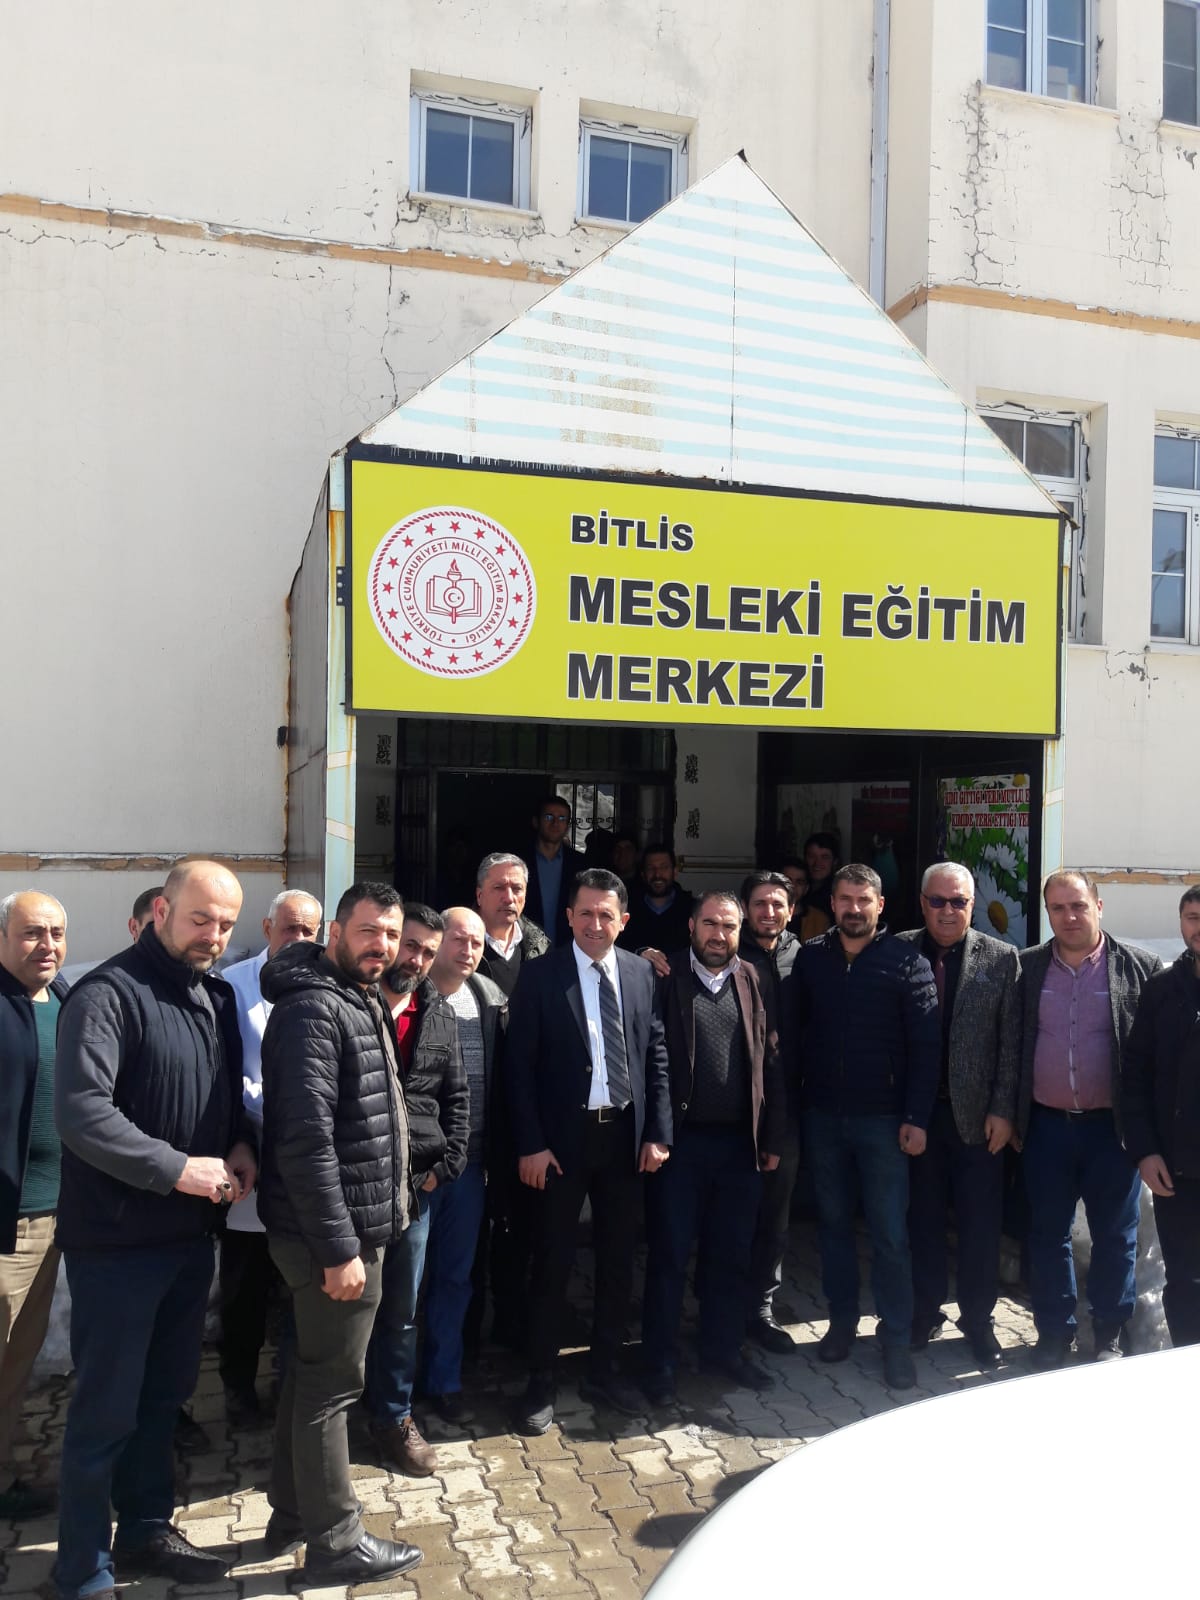 Bitlis Mesleki Eğitim Merkezi çırak öğrencileri, usta öğreticilerle buluştu.
